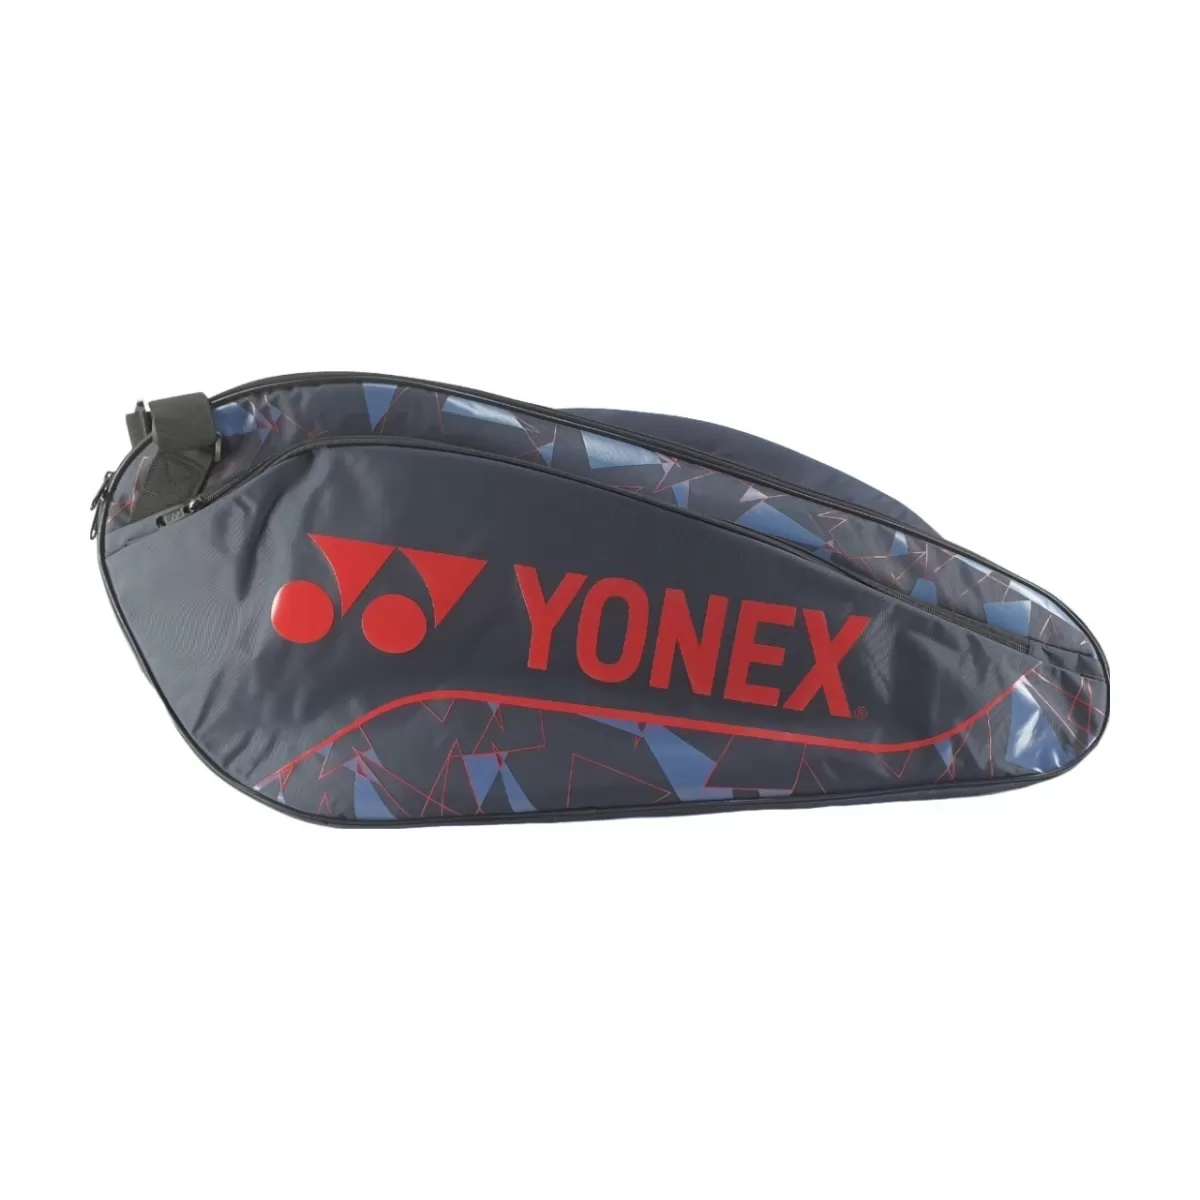 Túi cầu lông Yonex BAG2329T01 - Indigo fog/Hyper red chính hãng